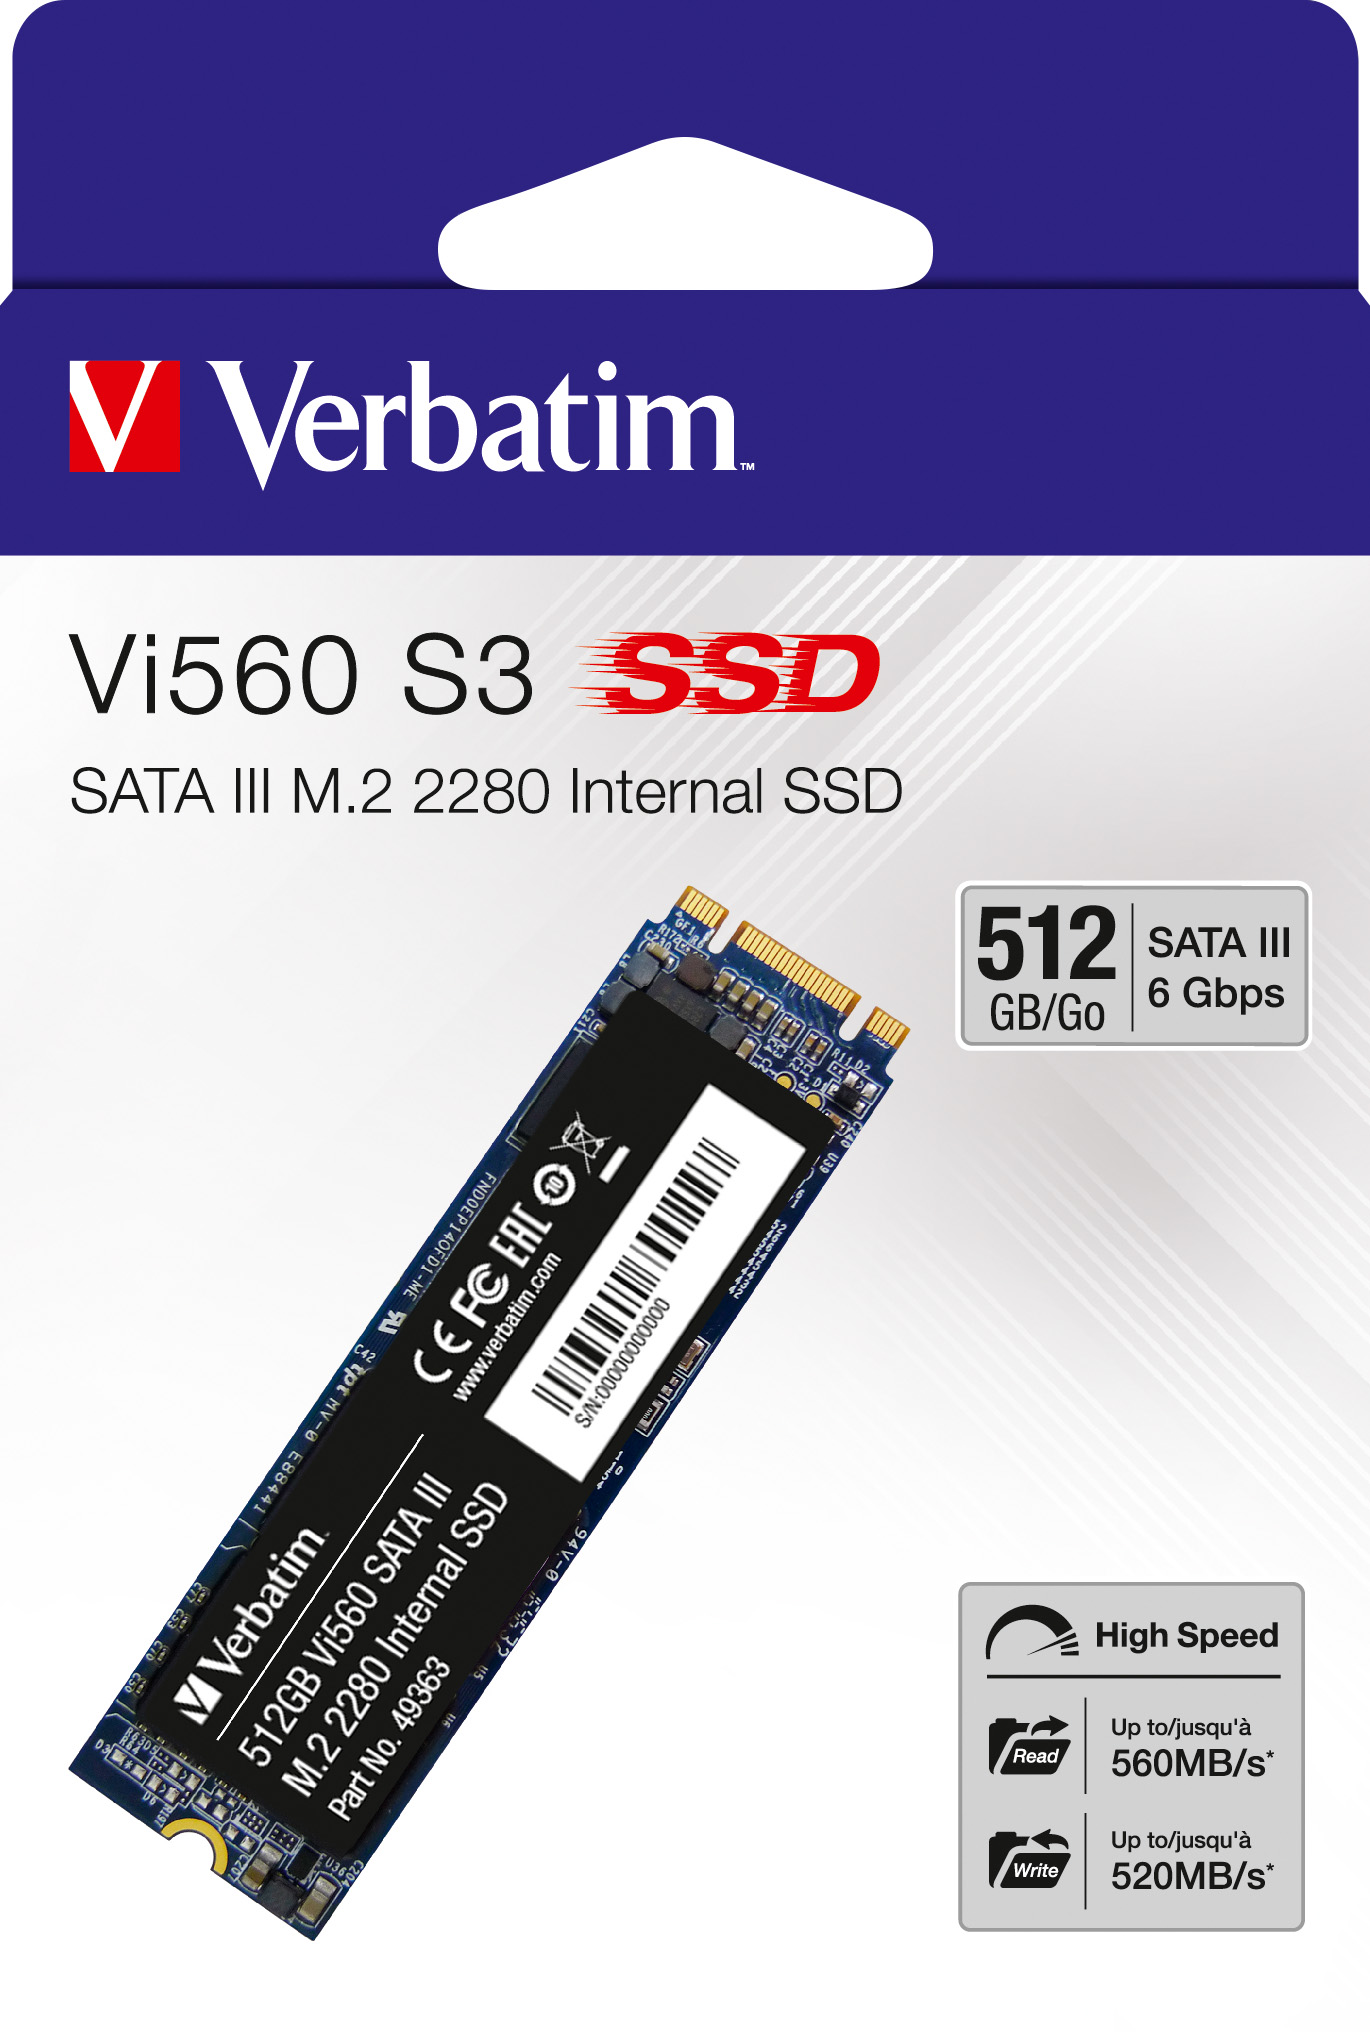 Verbatim SSD 512GB, SATA-III, M.2 2280 Vi560 S3, (R) 560MB/s, (W) 520MB/s, Retail